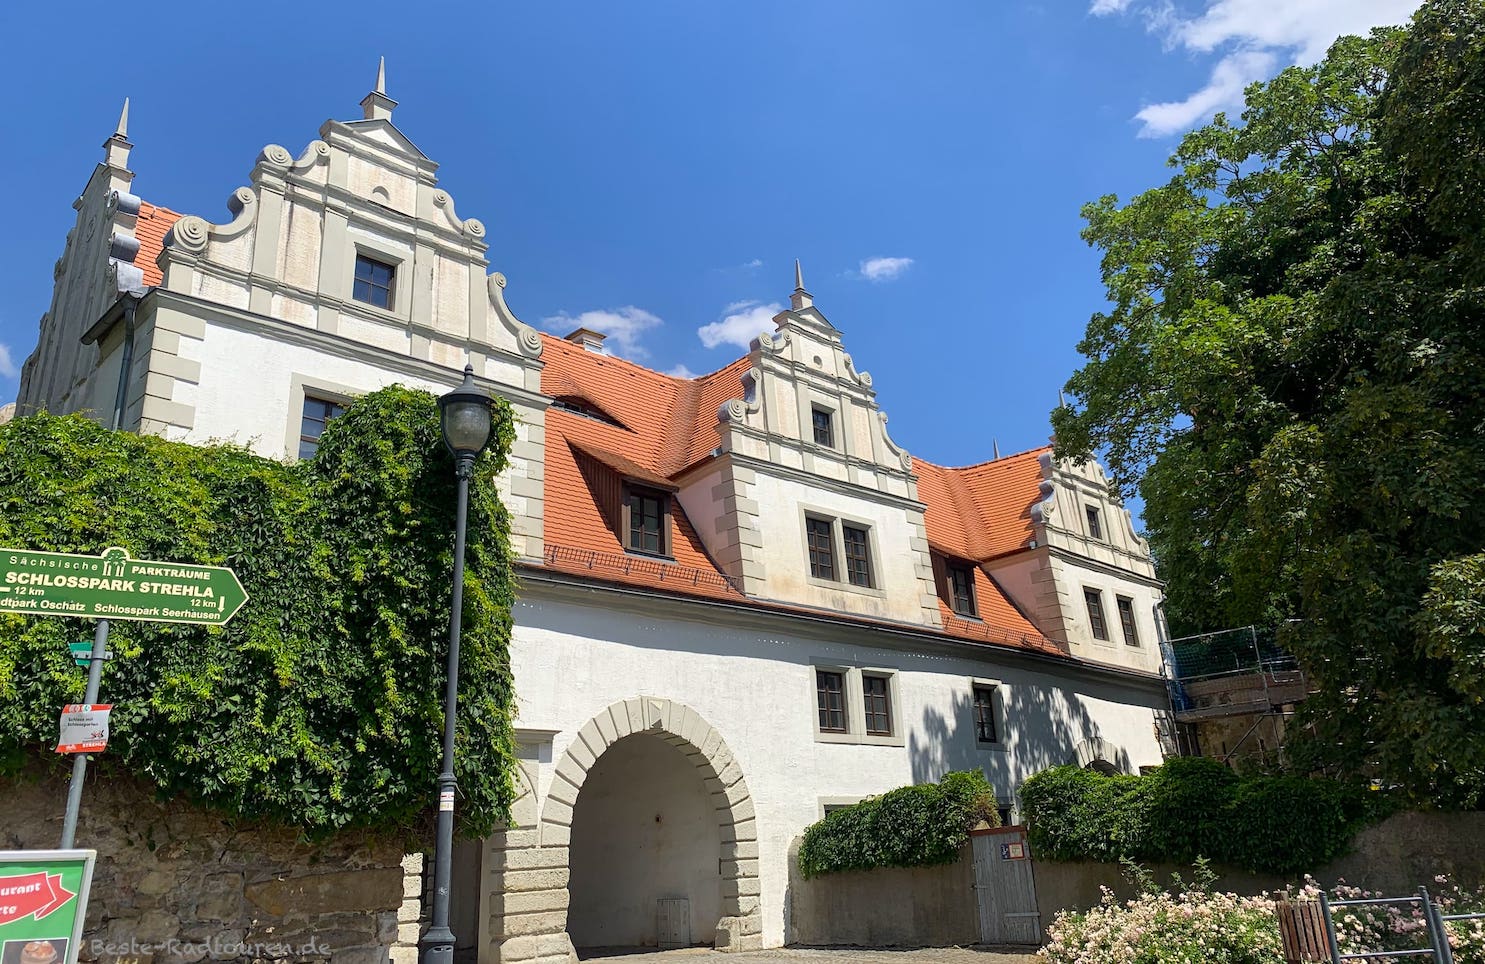 Burg und Schloss Strehla, Eingang am Torhaus, Foto von außen